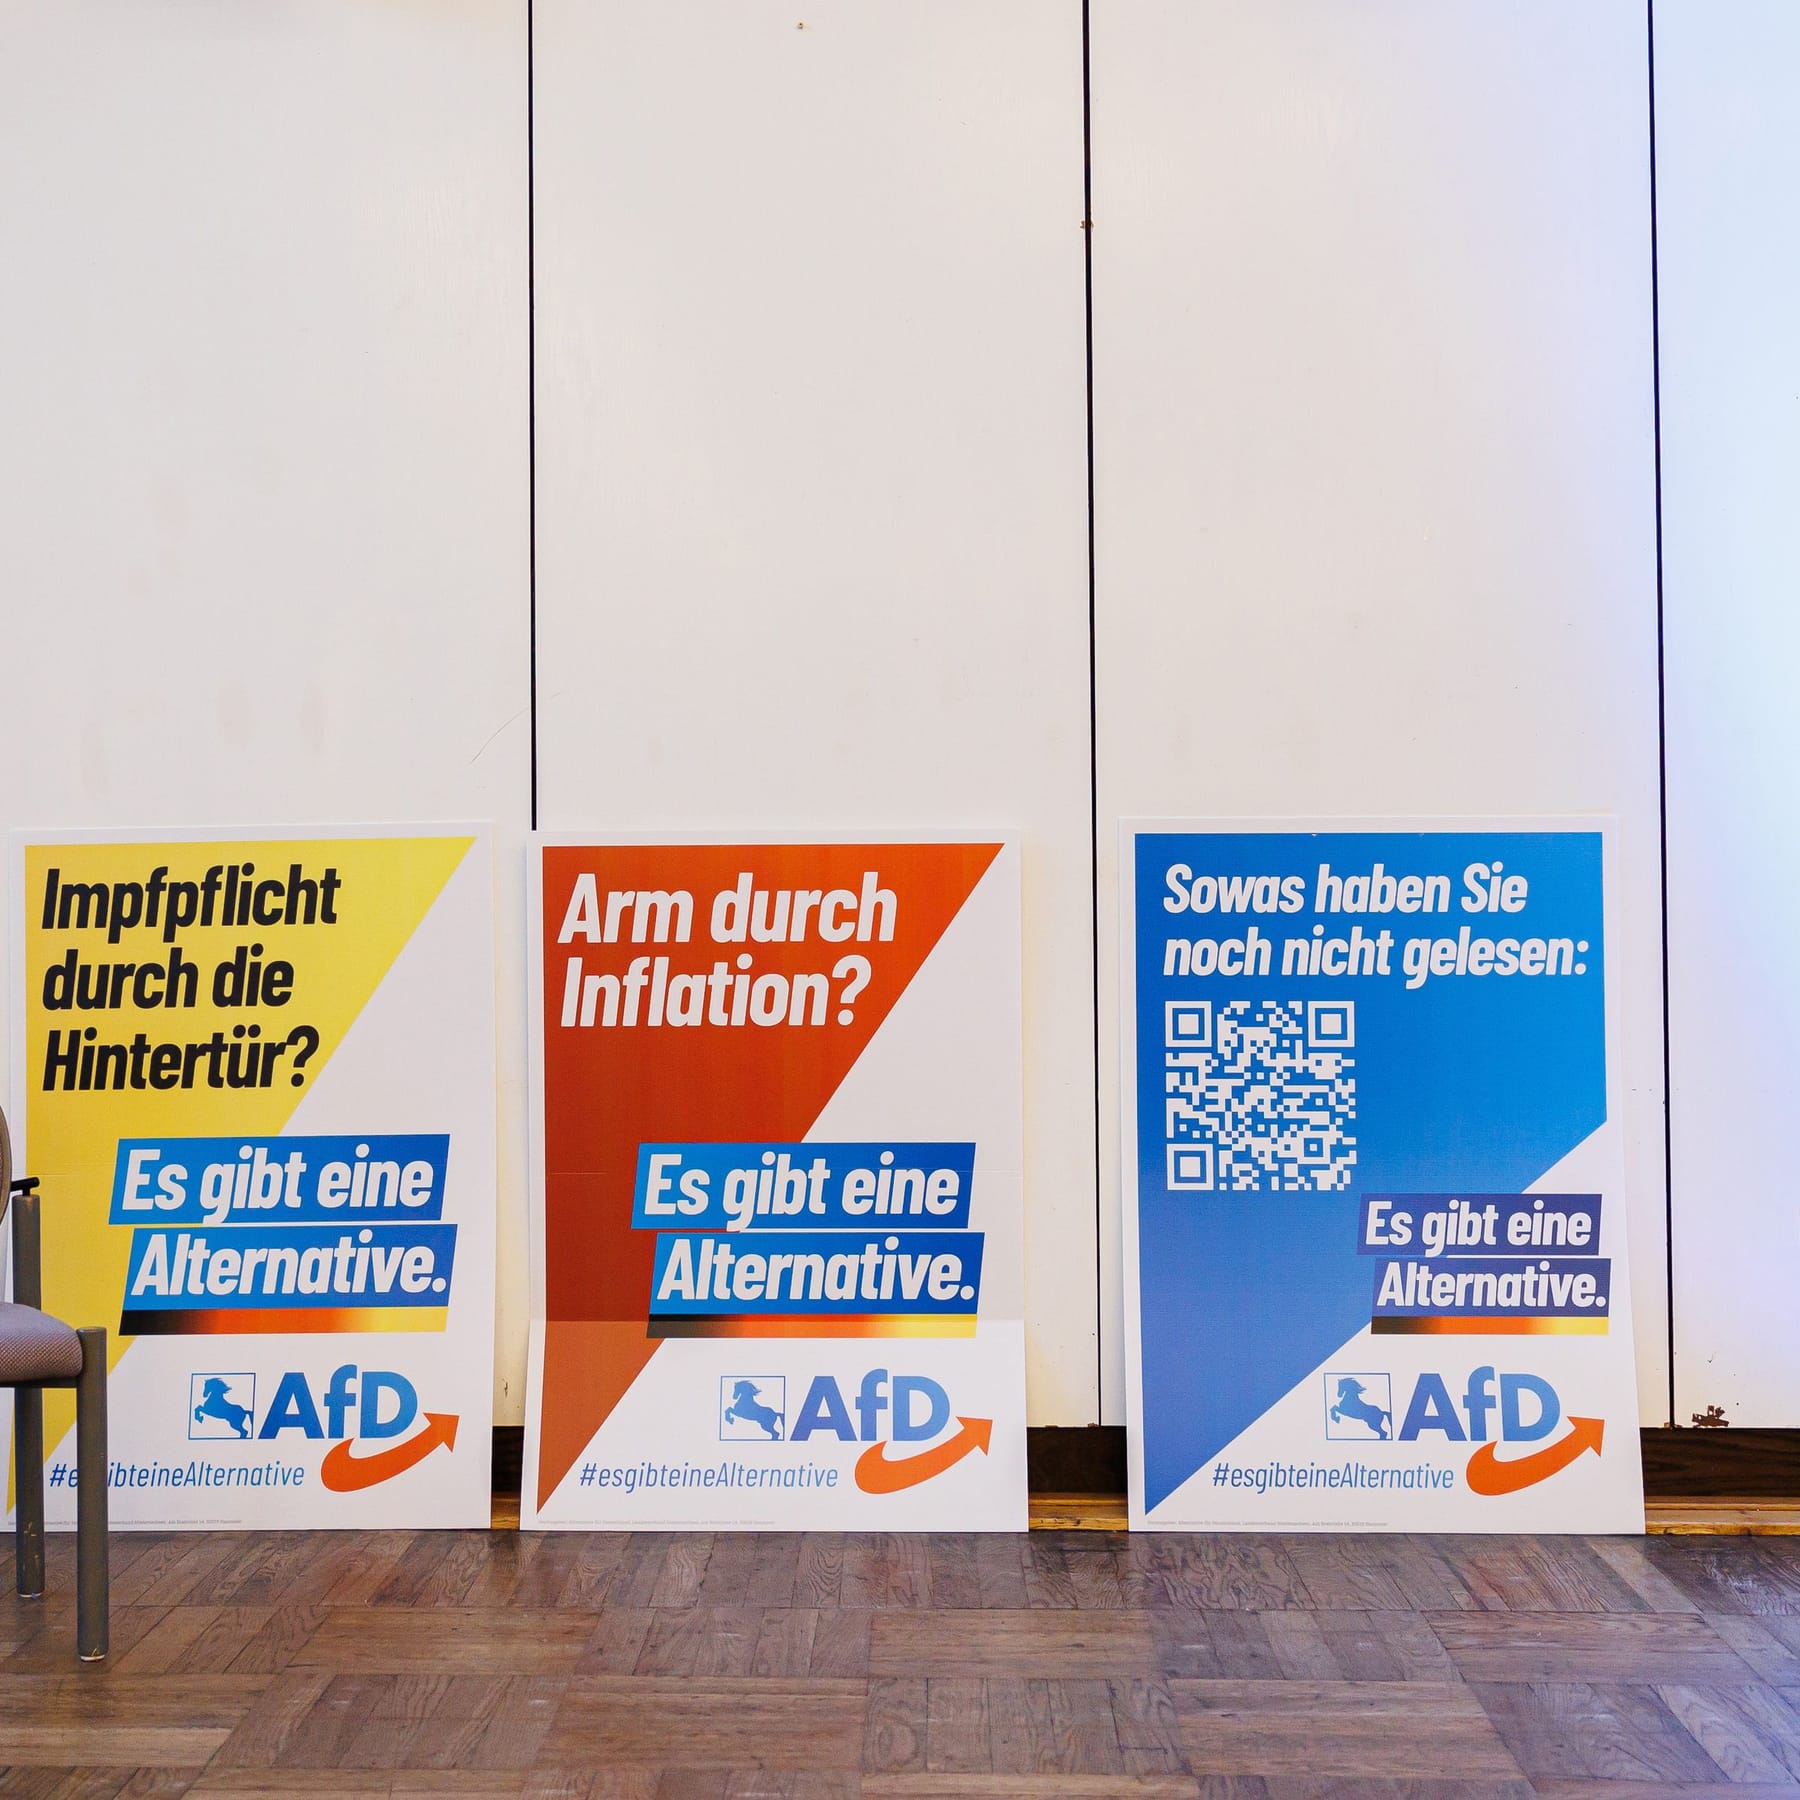 AfD-Gummibärchen werden zum Lacher im Netz: Schwänze für Deutschland?